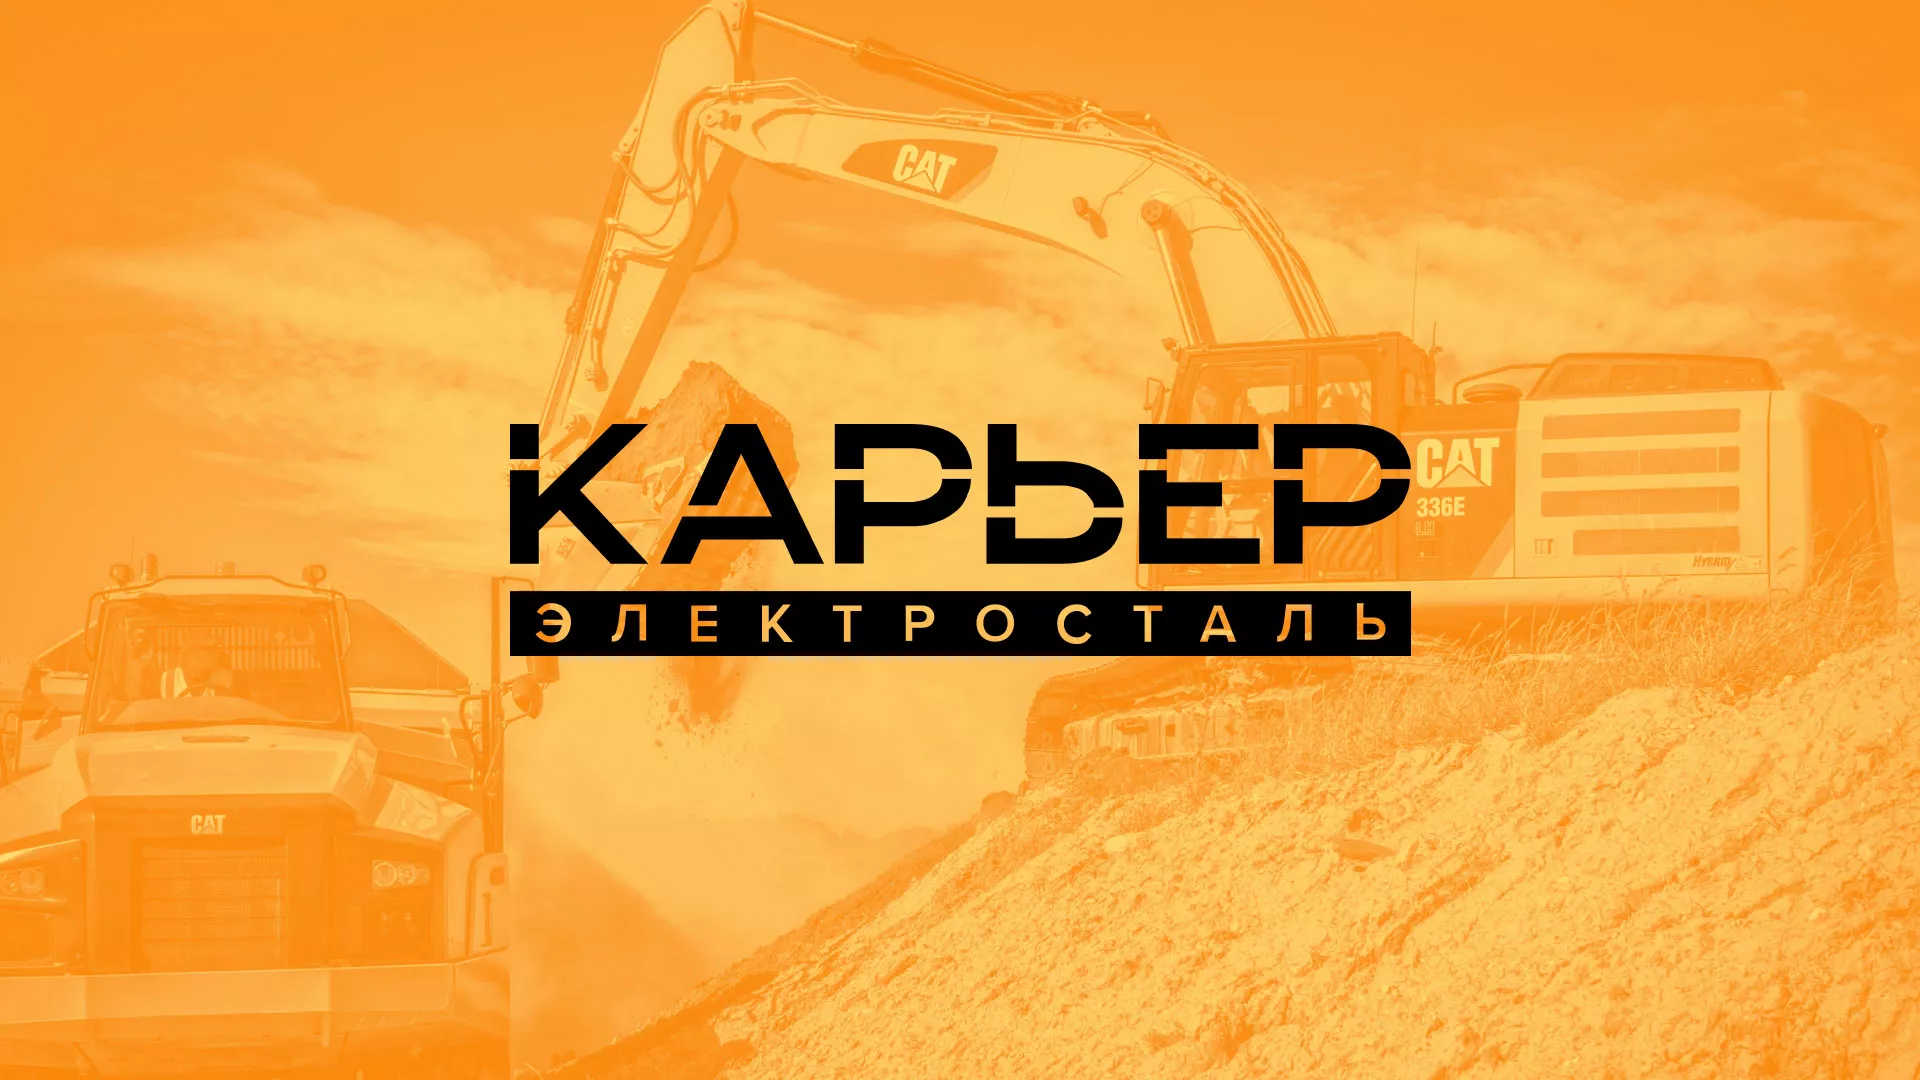 Разработка сайта по продаже нерудных материалов «Карьер» в Александровске-Сахалинском